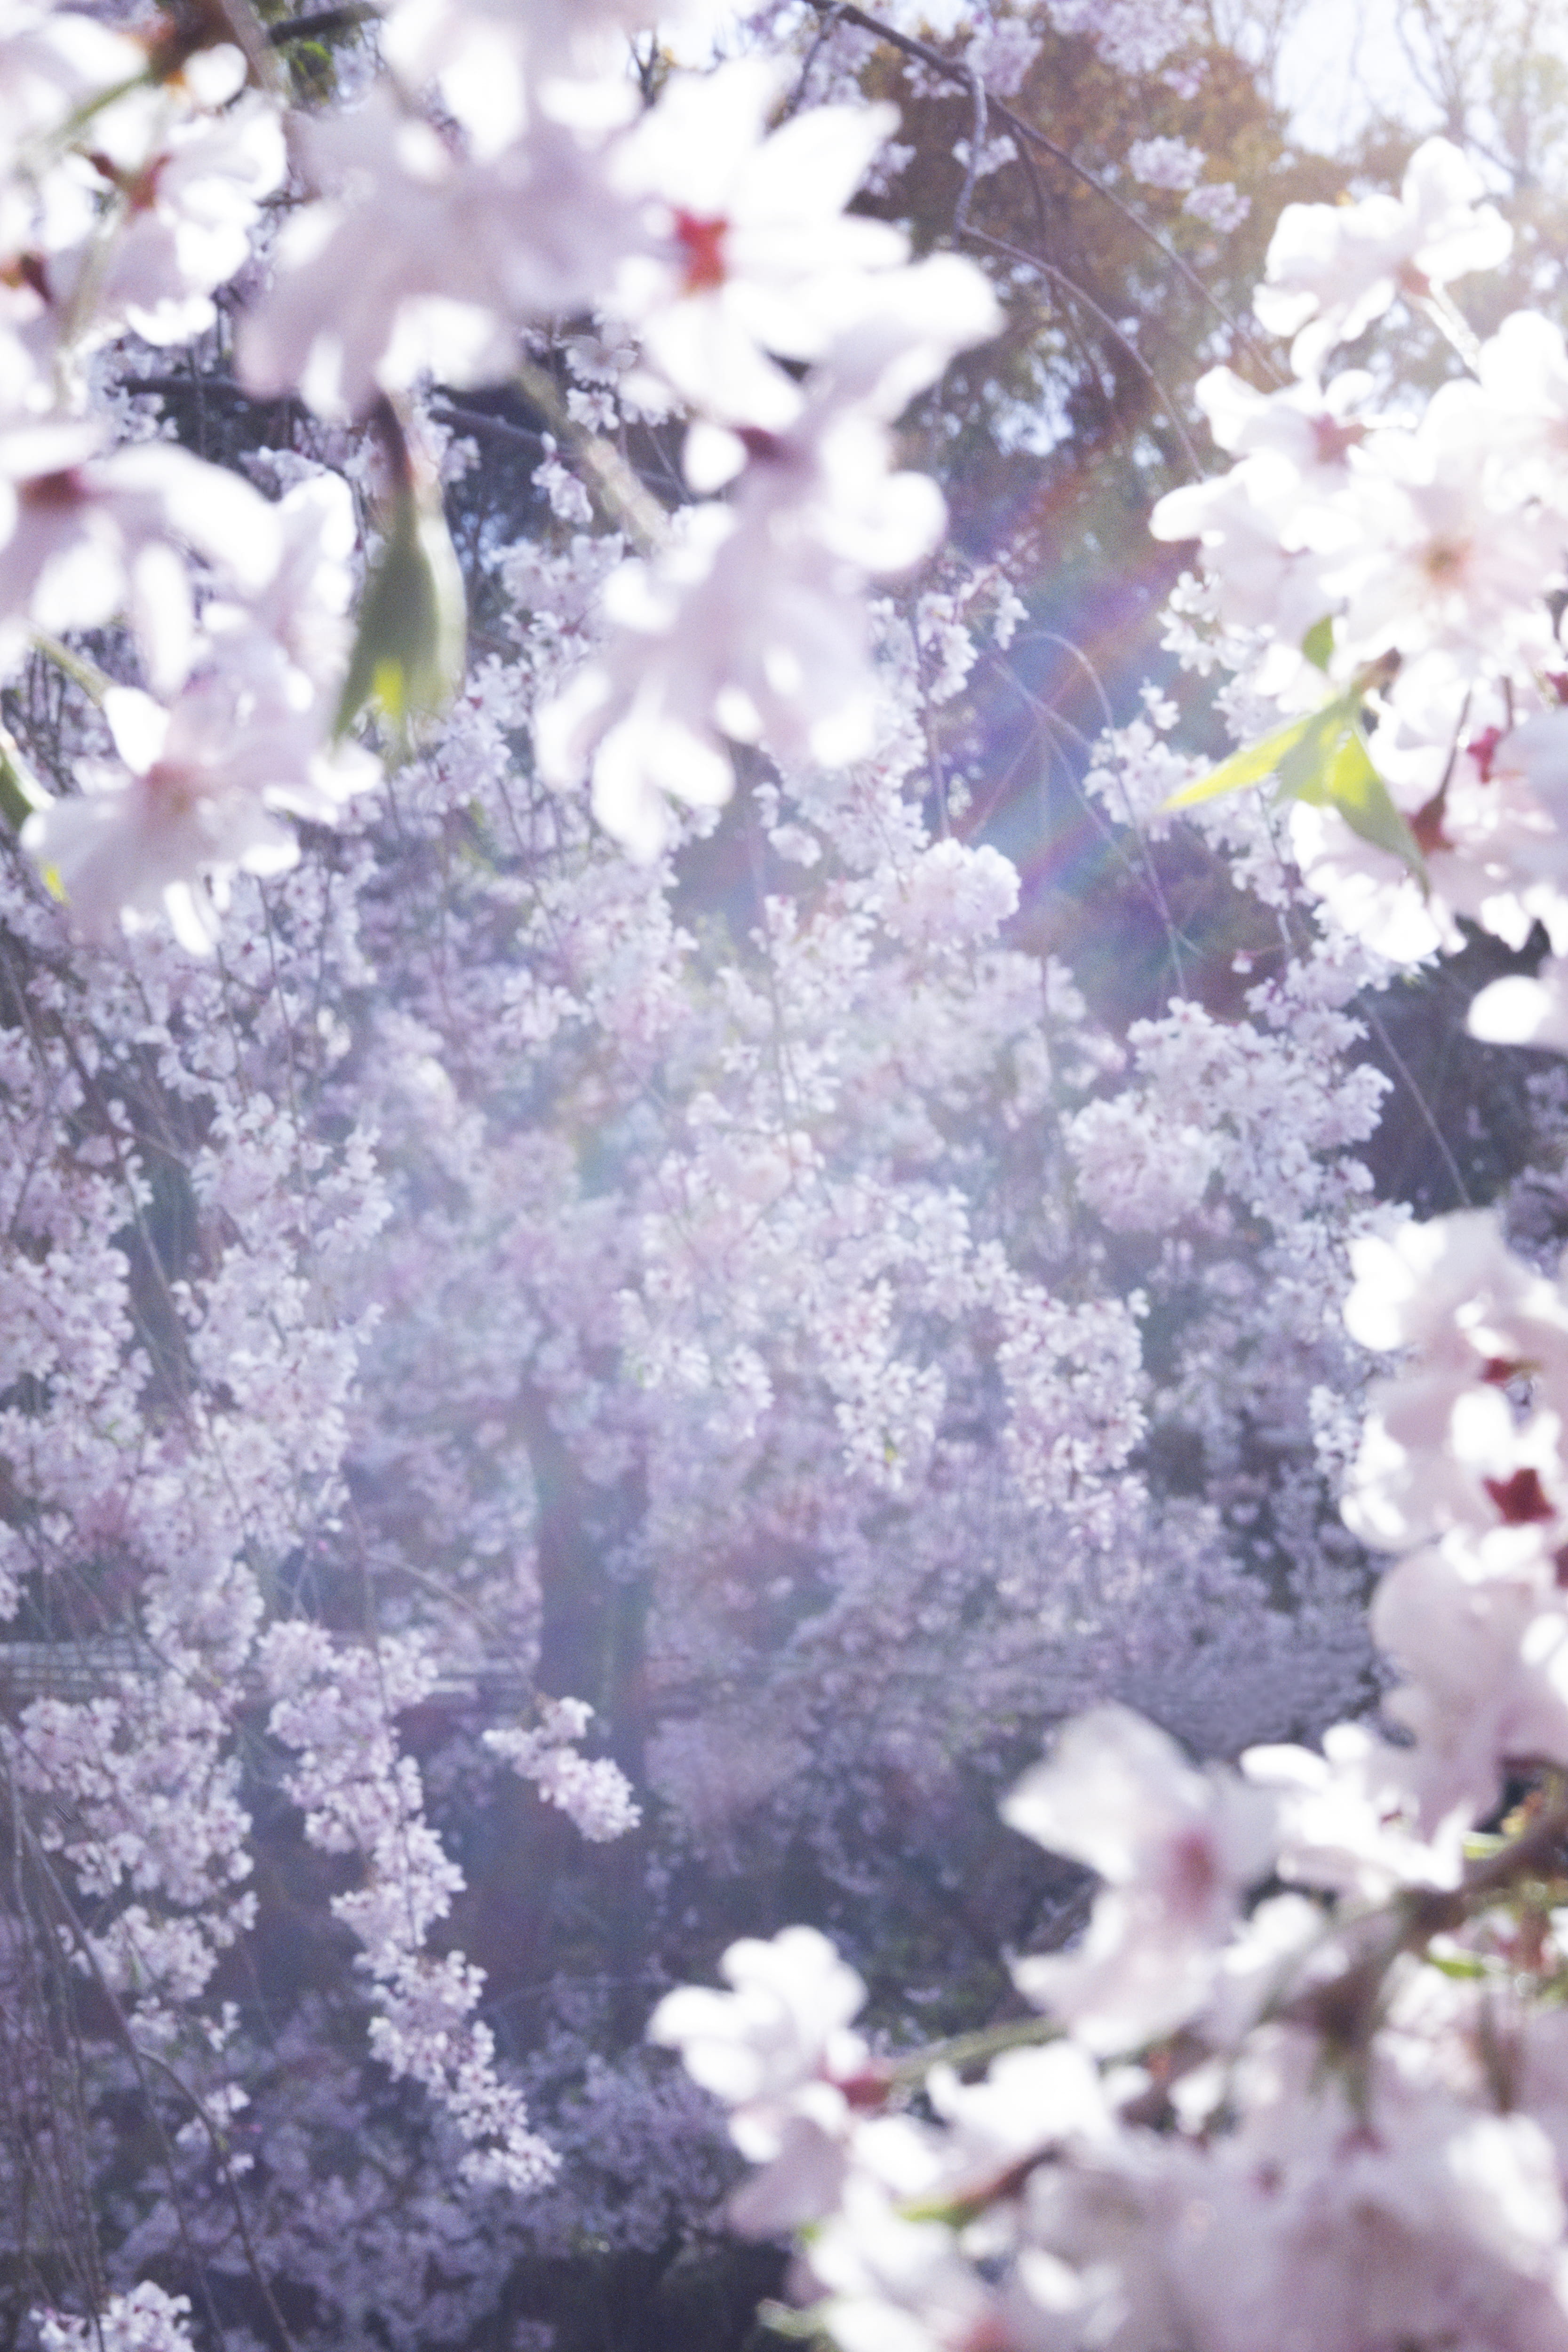 蜷川実花インタビュー それでも世界は美しい 光と花々に見出した新境地 Tokyo Art Beat